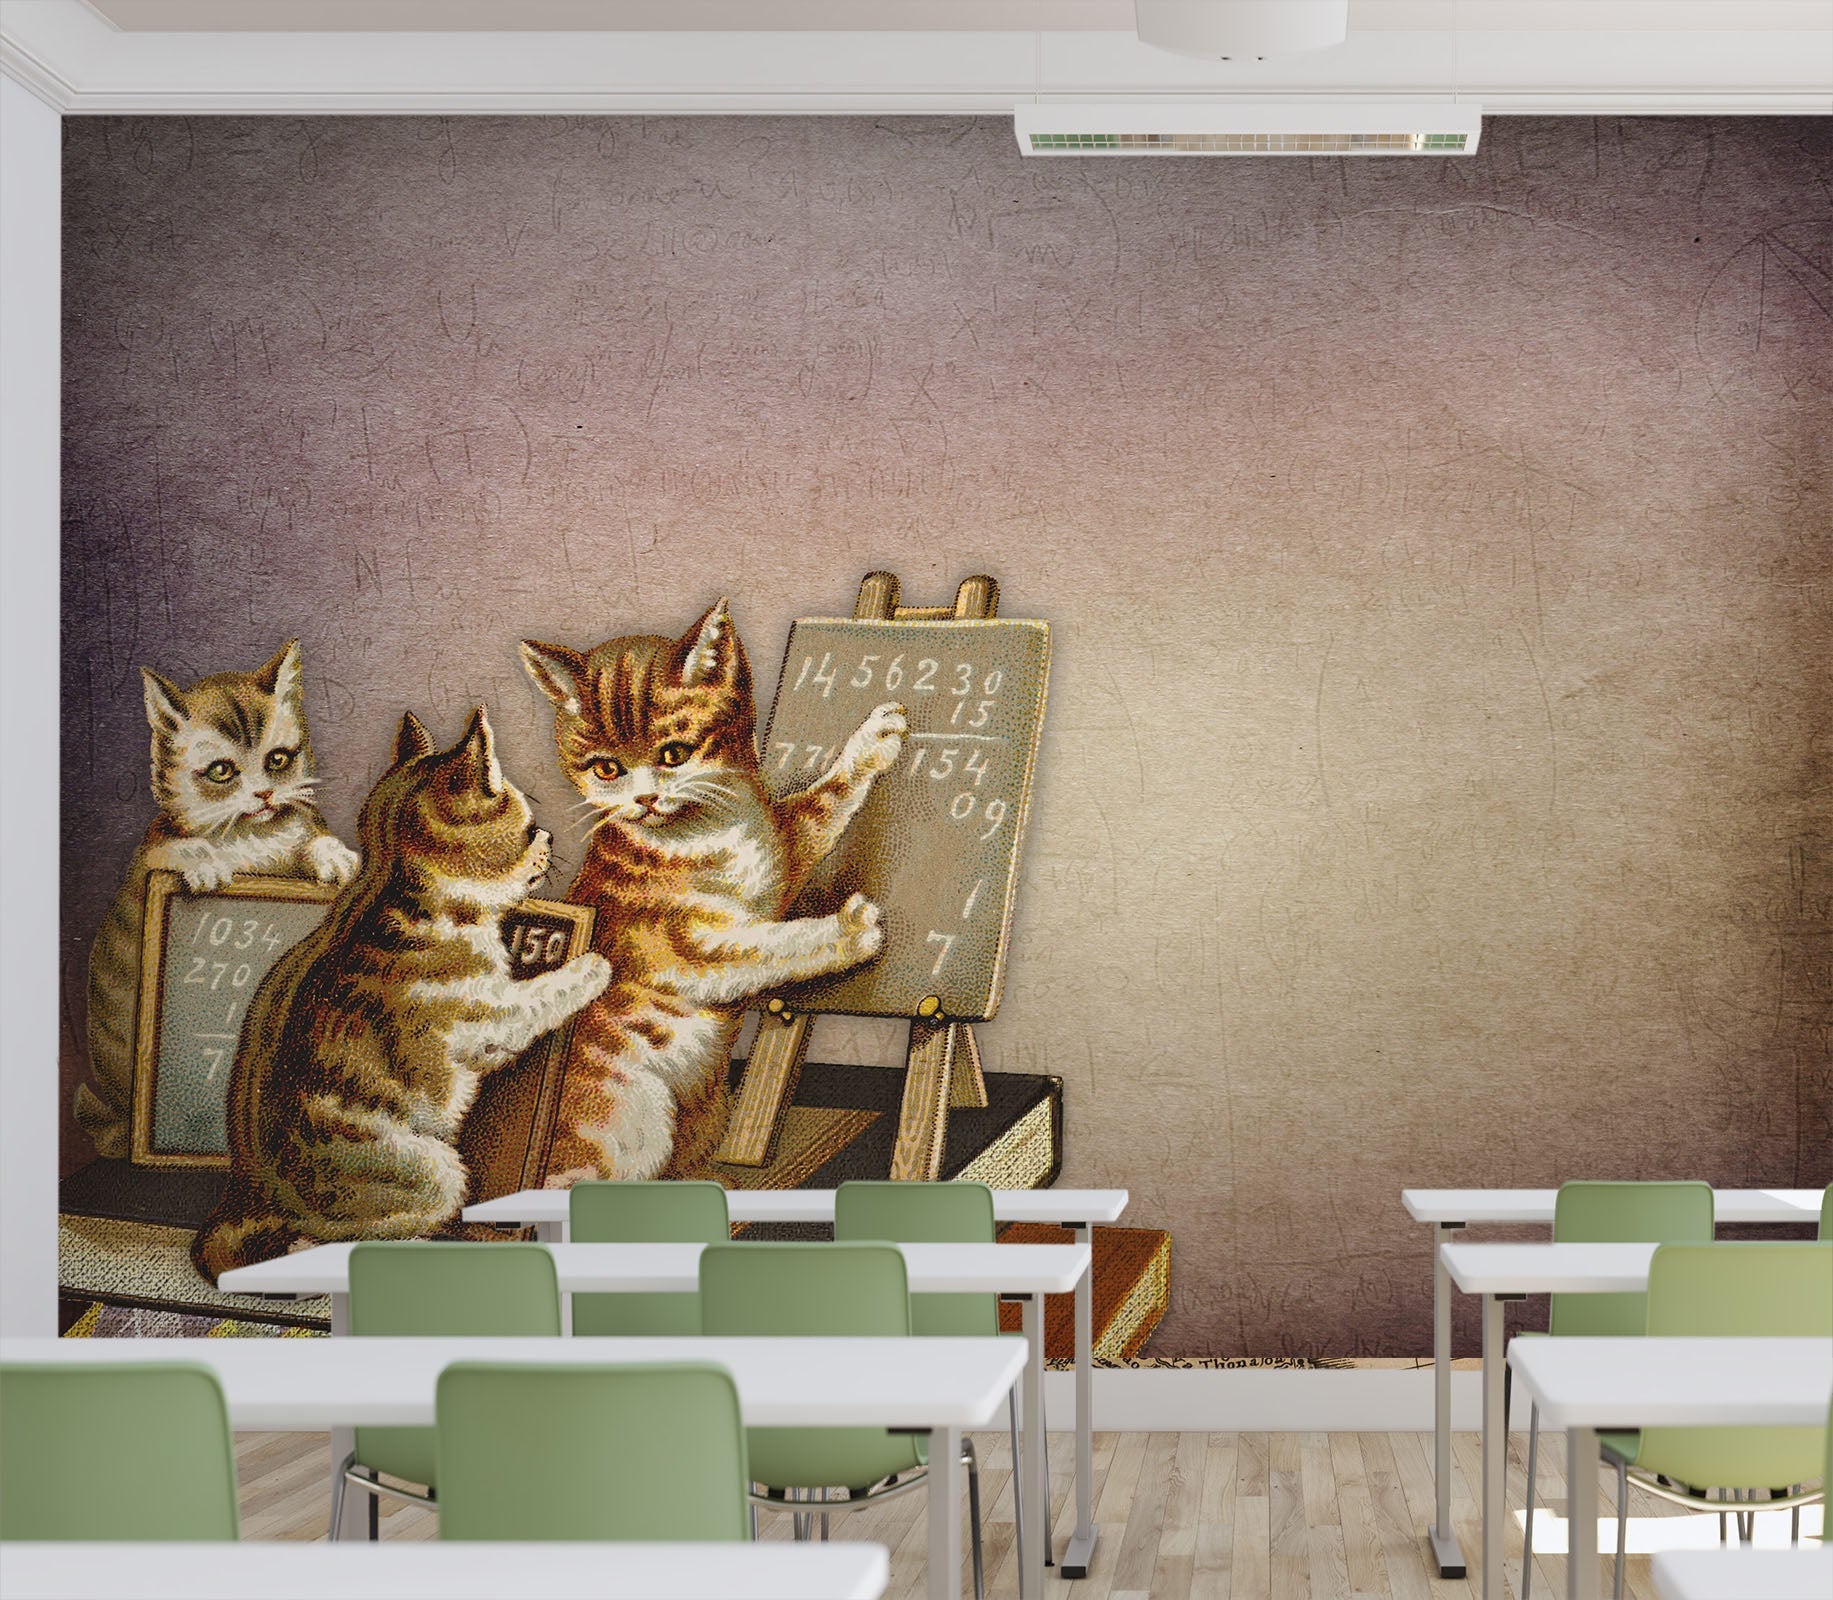 3D cats trying to teach 41 Wall Murals Wallpaper AJ Wallpaper 2 